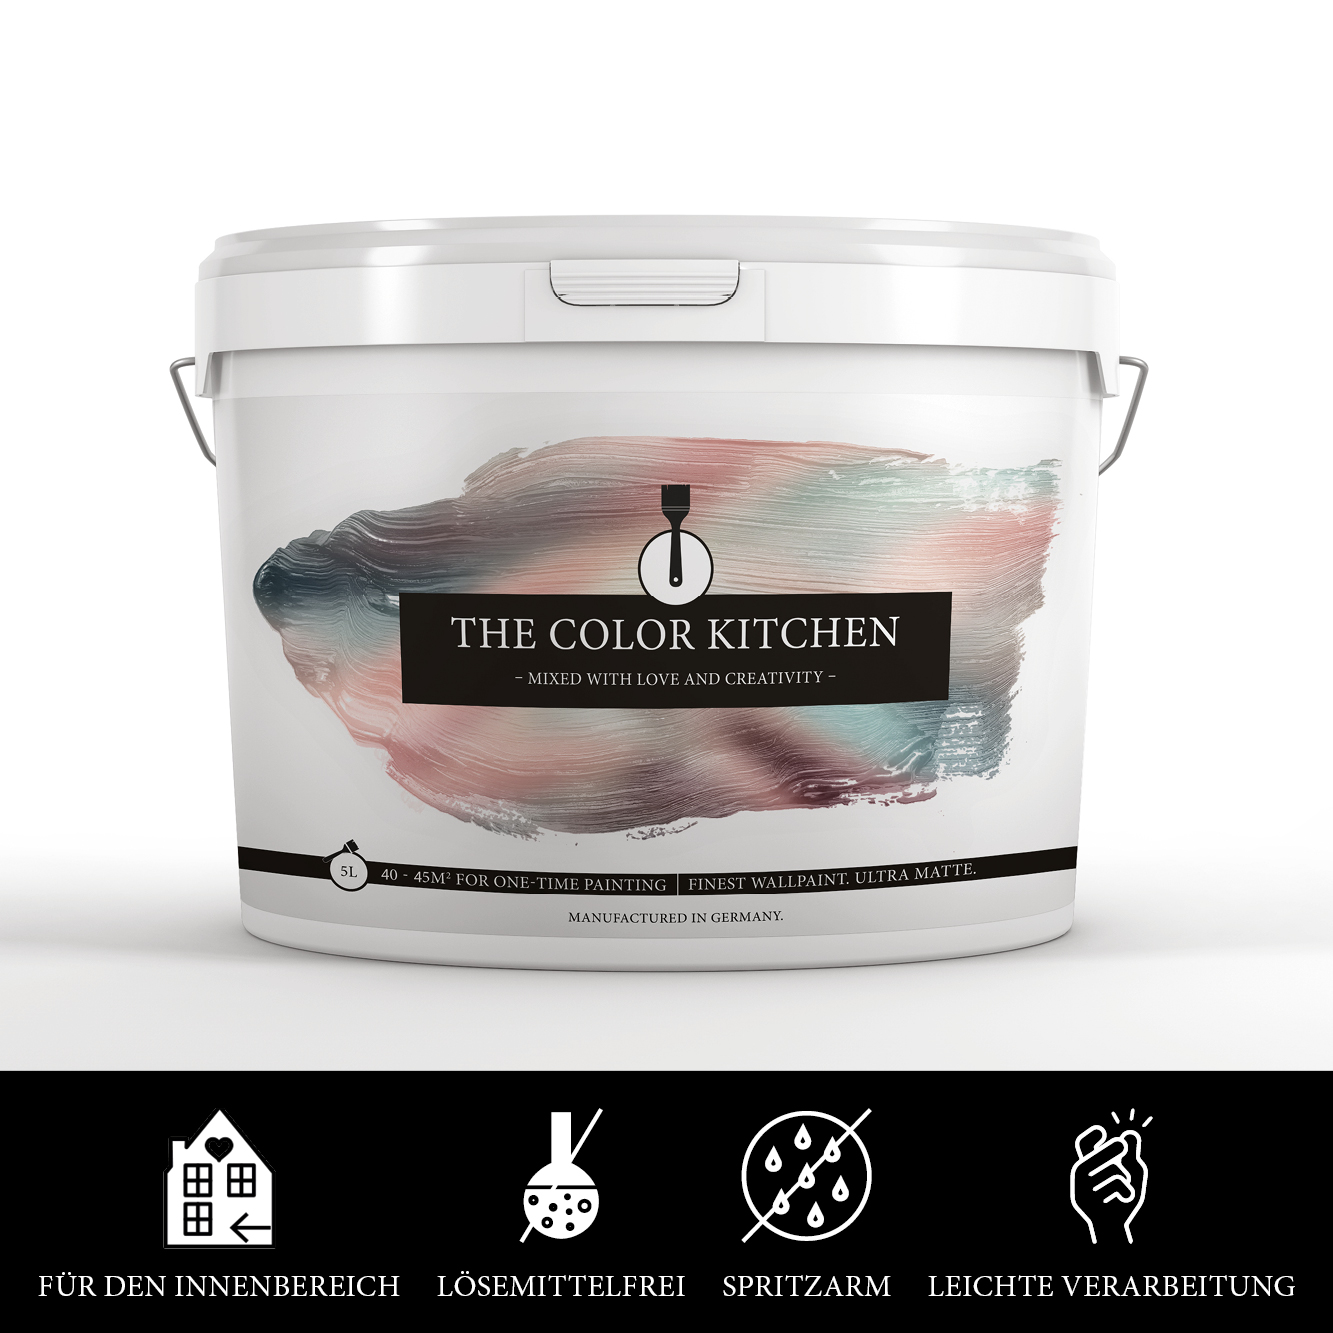 The Color Kitchen Magical Mint 5 l